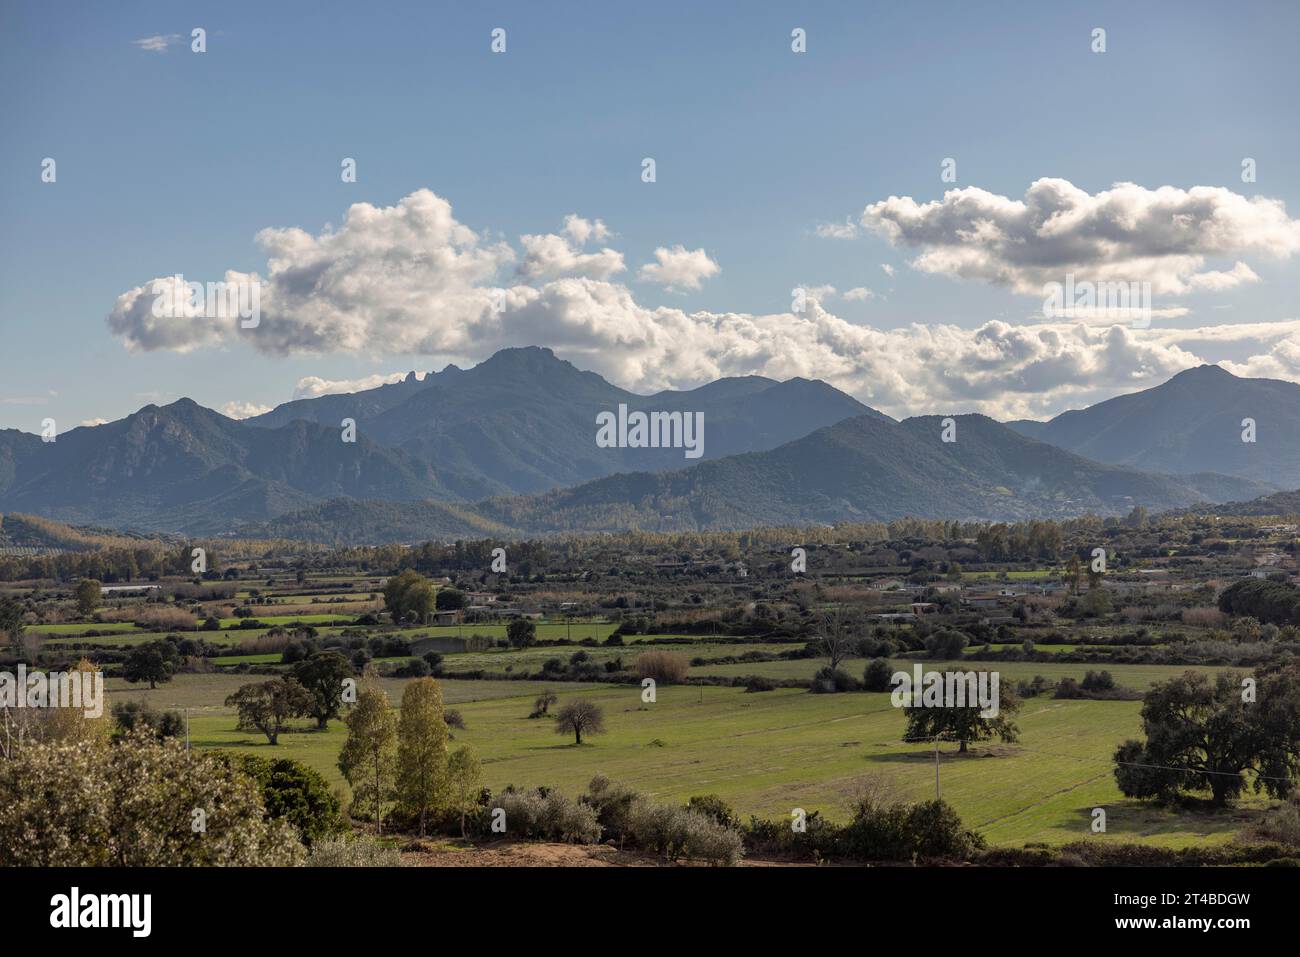 Beautiful landscape with green meadows and mountains, Bari Sardo, Ogliastra, Sardinia, Italy Stock Photo